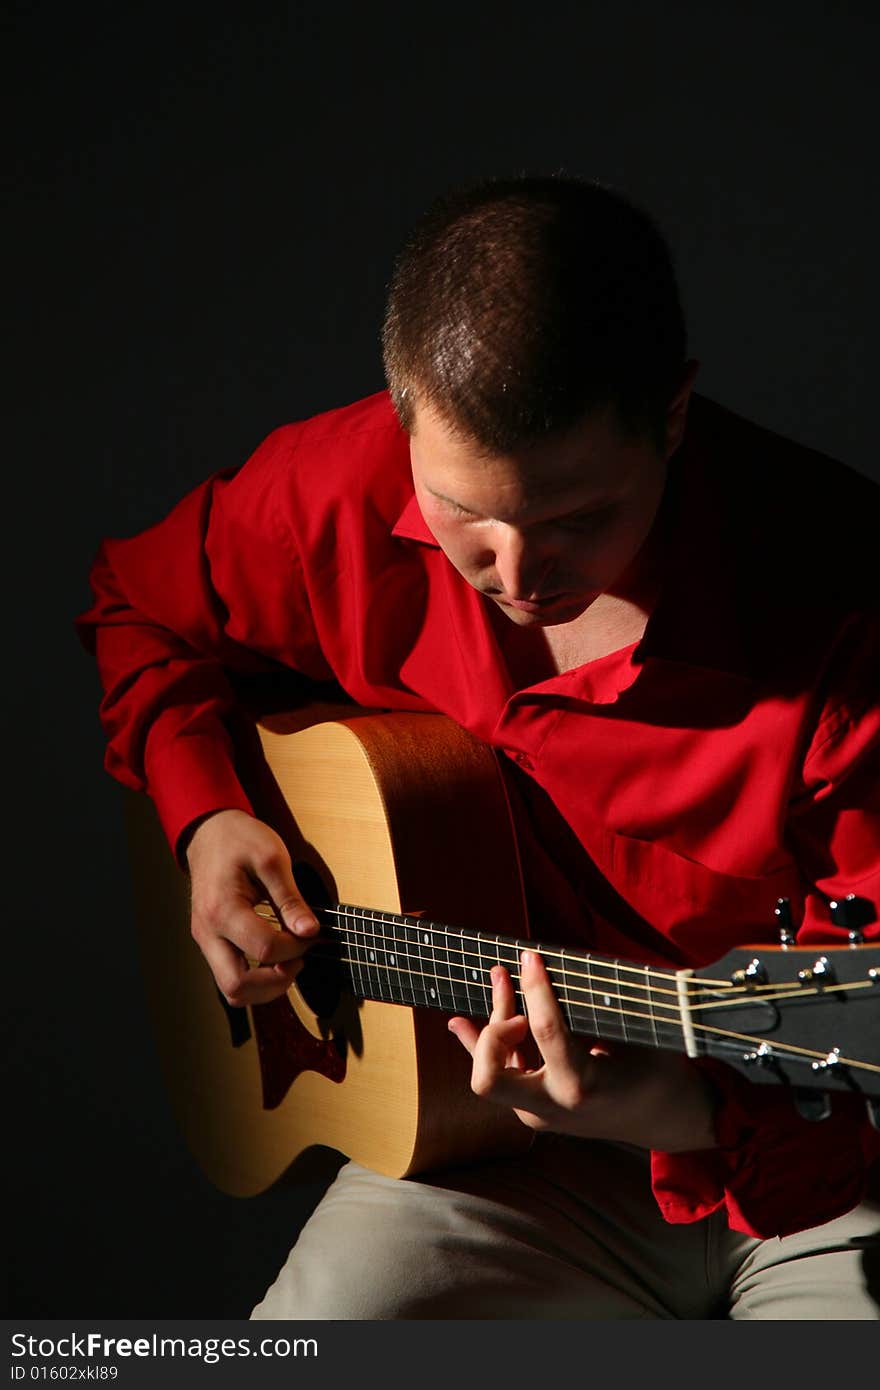 Guitarist in red shirt on dark